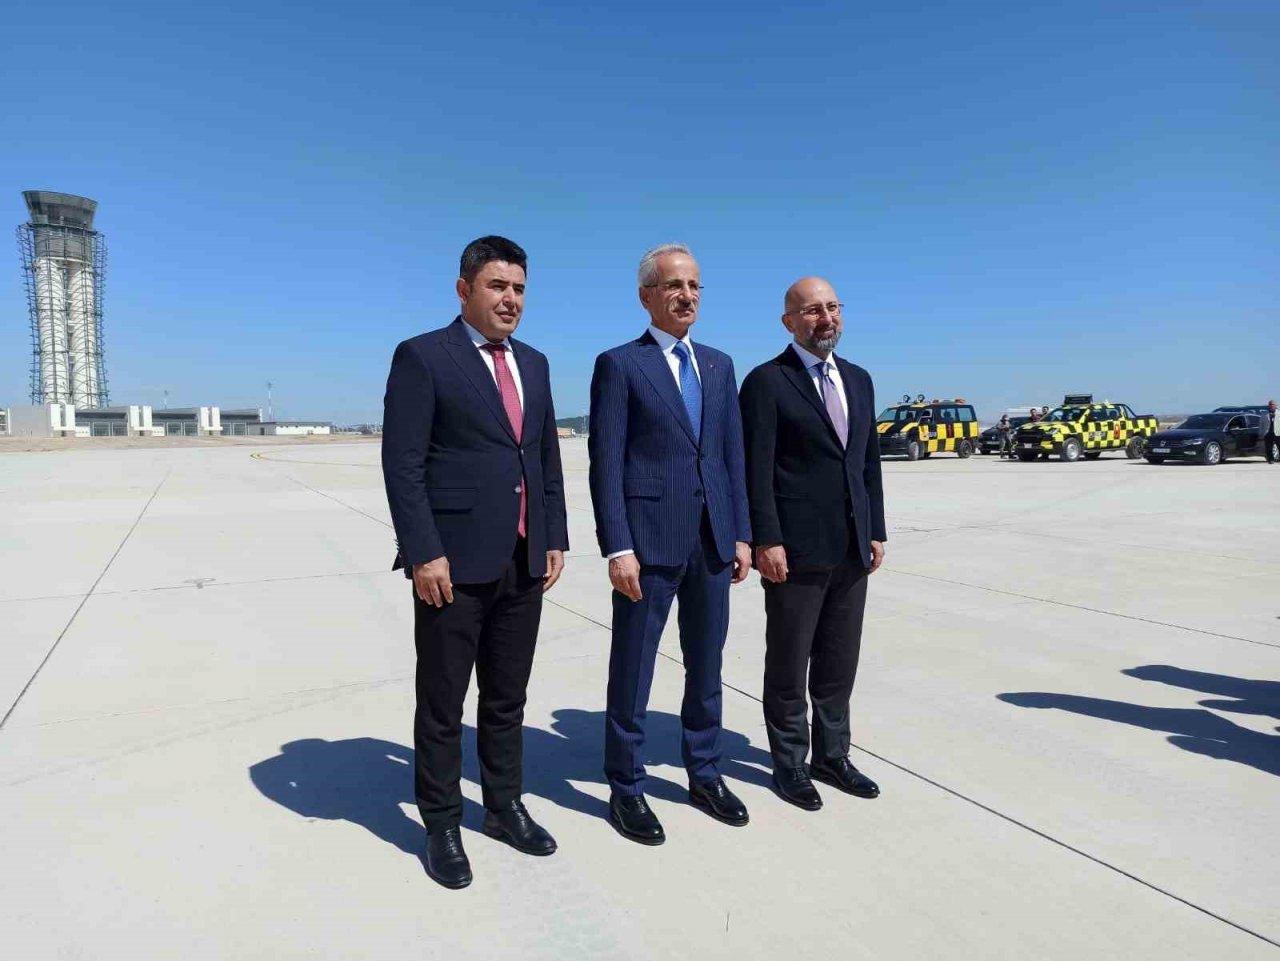 Ulaştırma ve Altyapı Bakanı Uraloğlu: “Sabiha Gökçen Havalimanımızın 2’inci pistini iniş ve kalkışa müsait duruma getirdik”